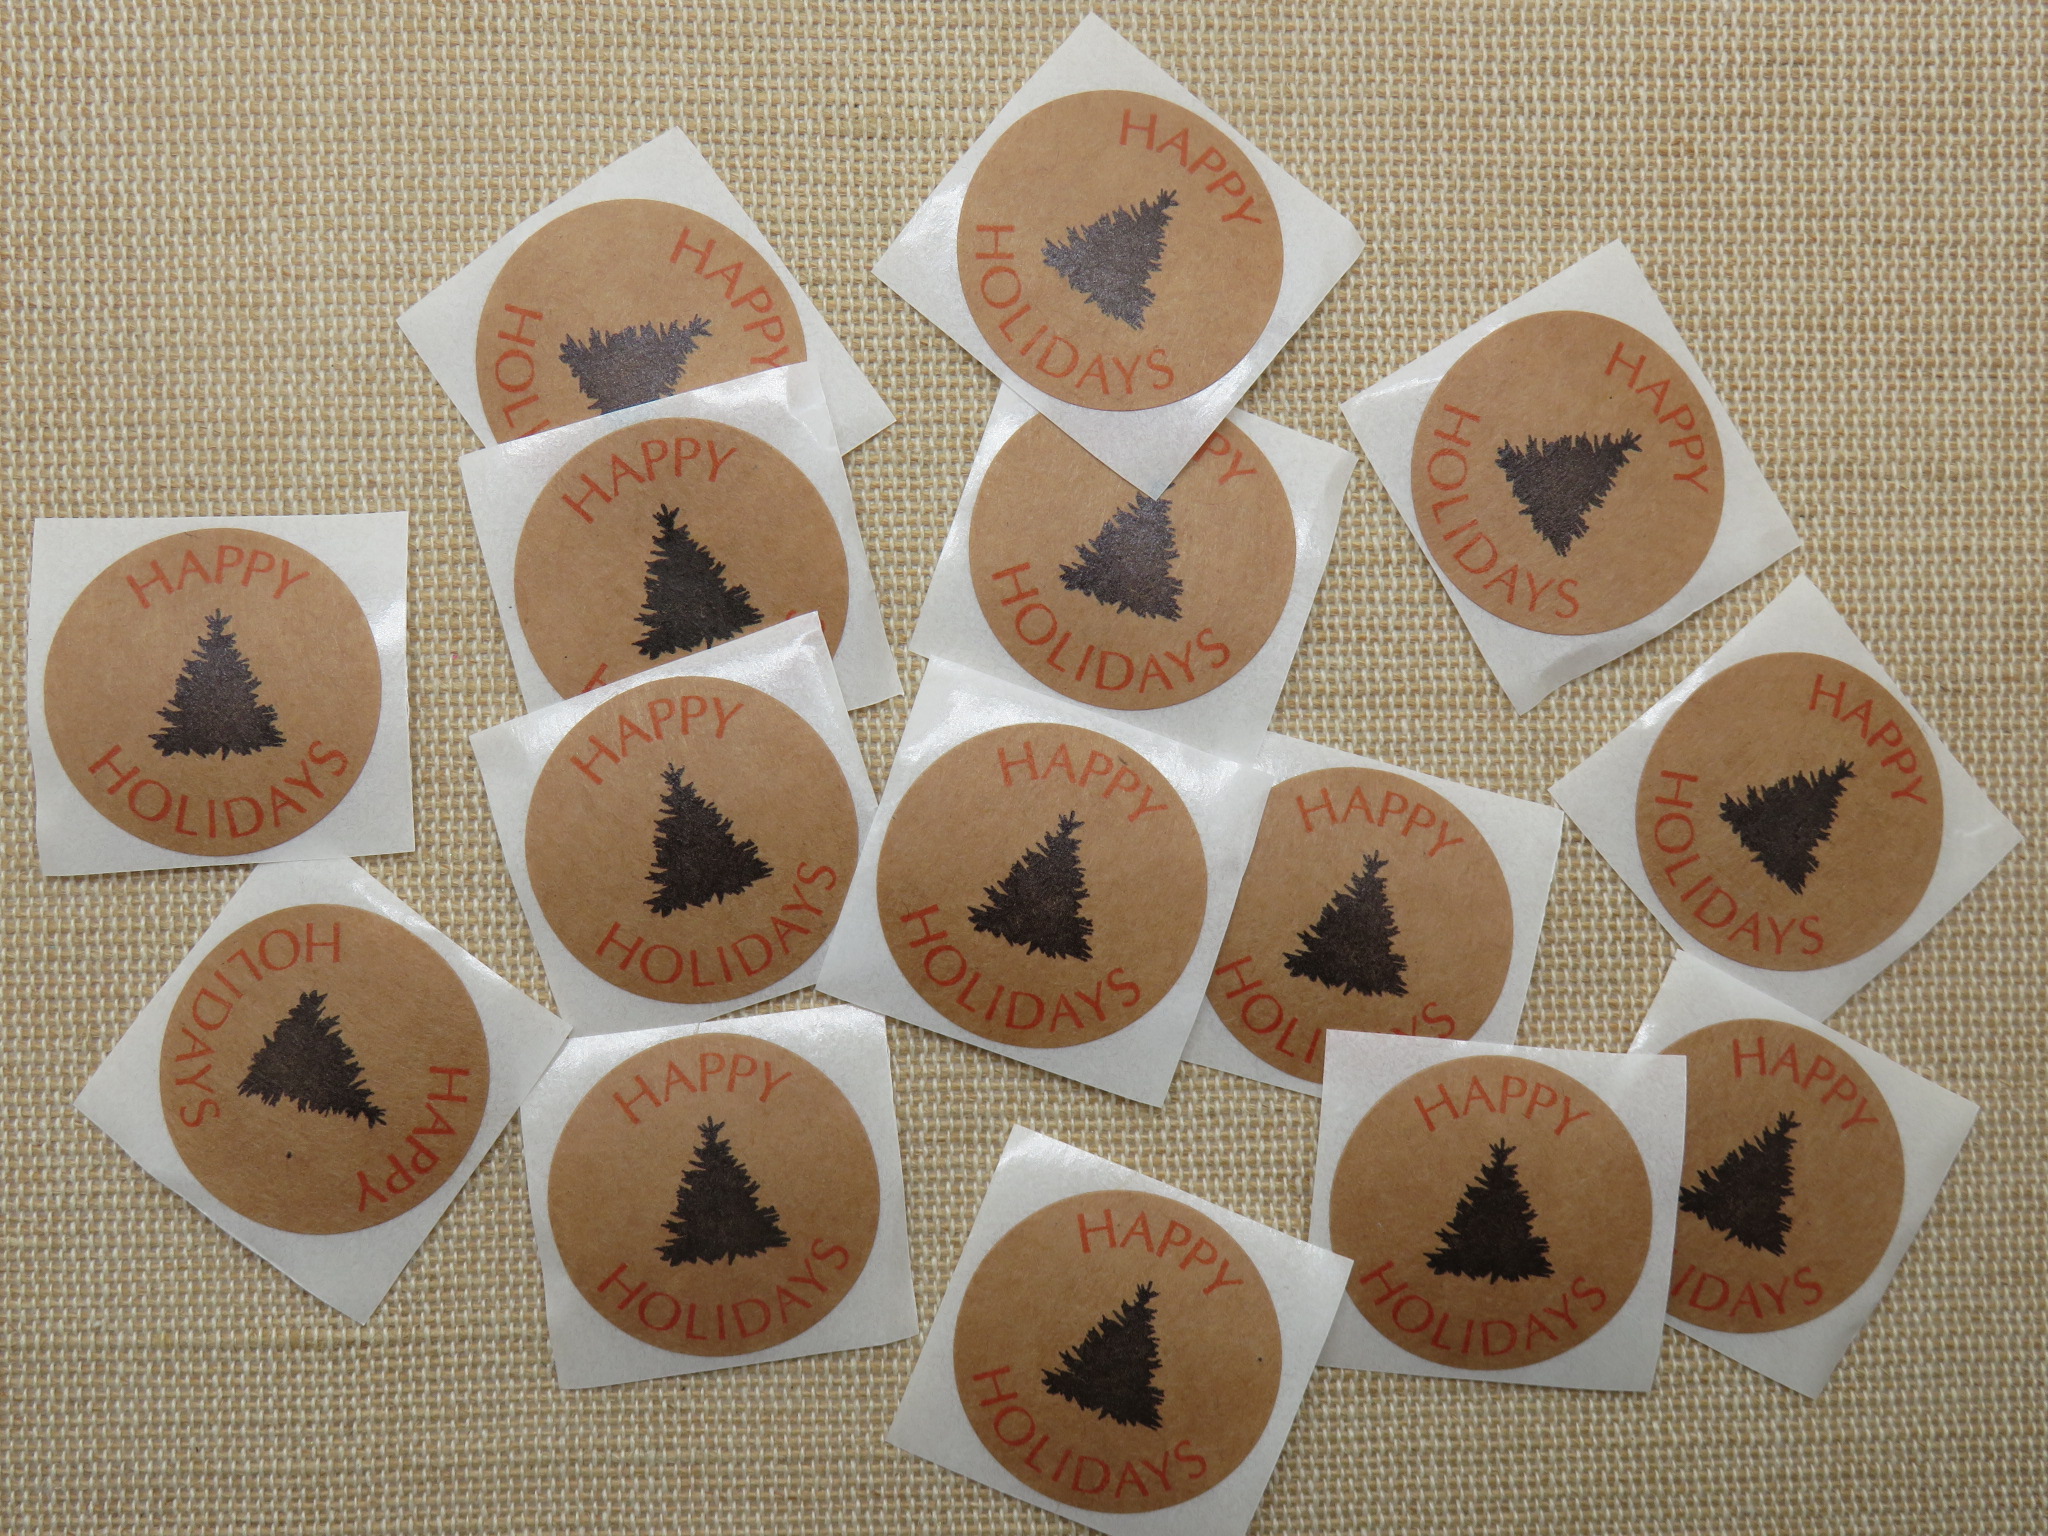 Étiquettes Happy Holidays autocollante avec sapin noir - lot de 25 stickers rond 25mm